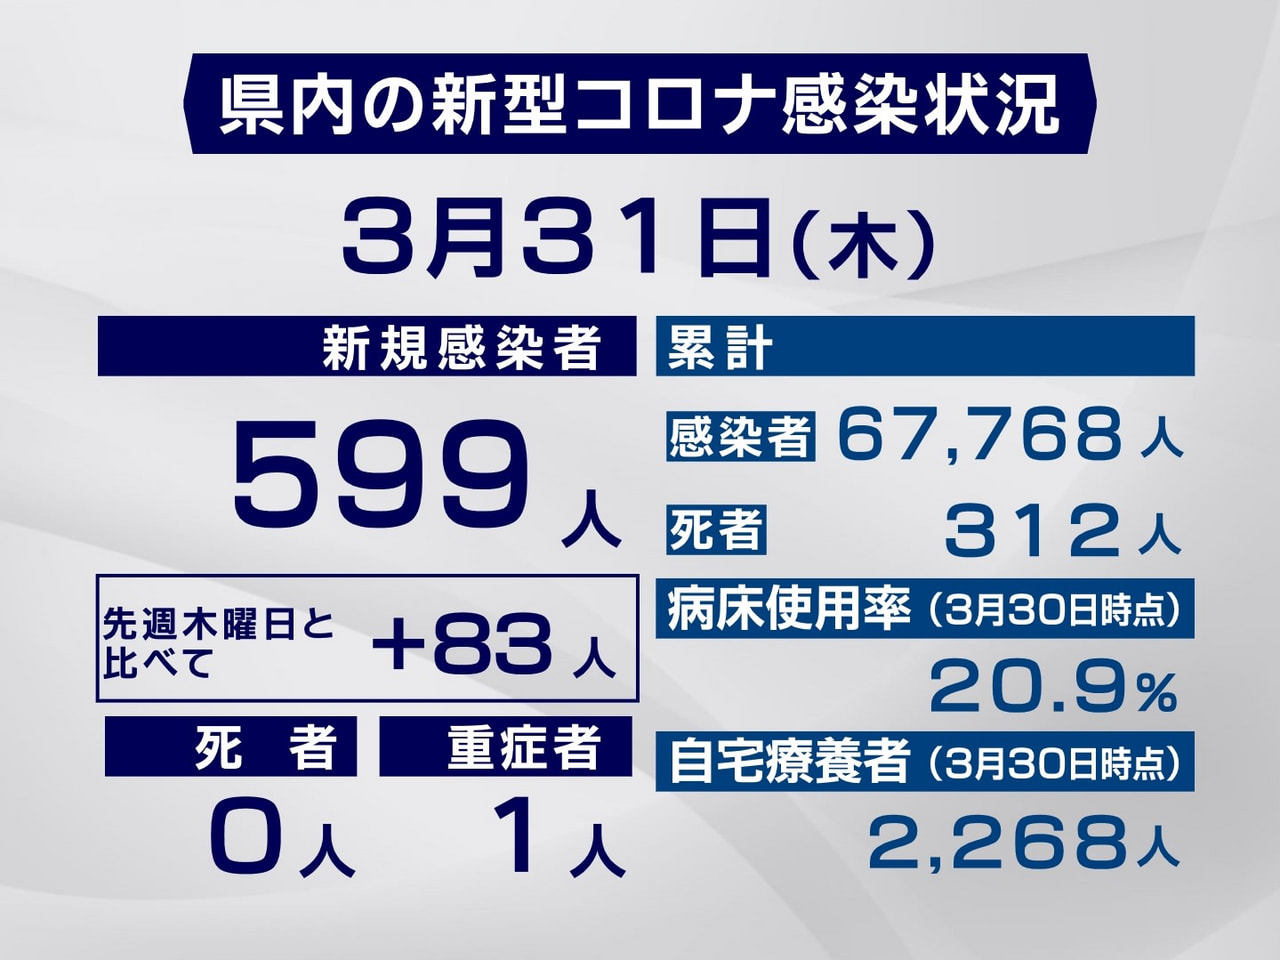 岐阜県は３１日、新型コロナウイルスの新規感染者が５９９人確認されたと発表しました...